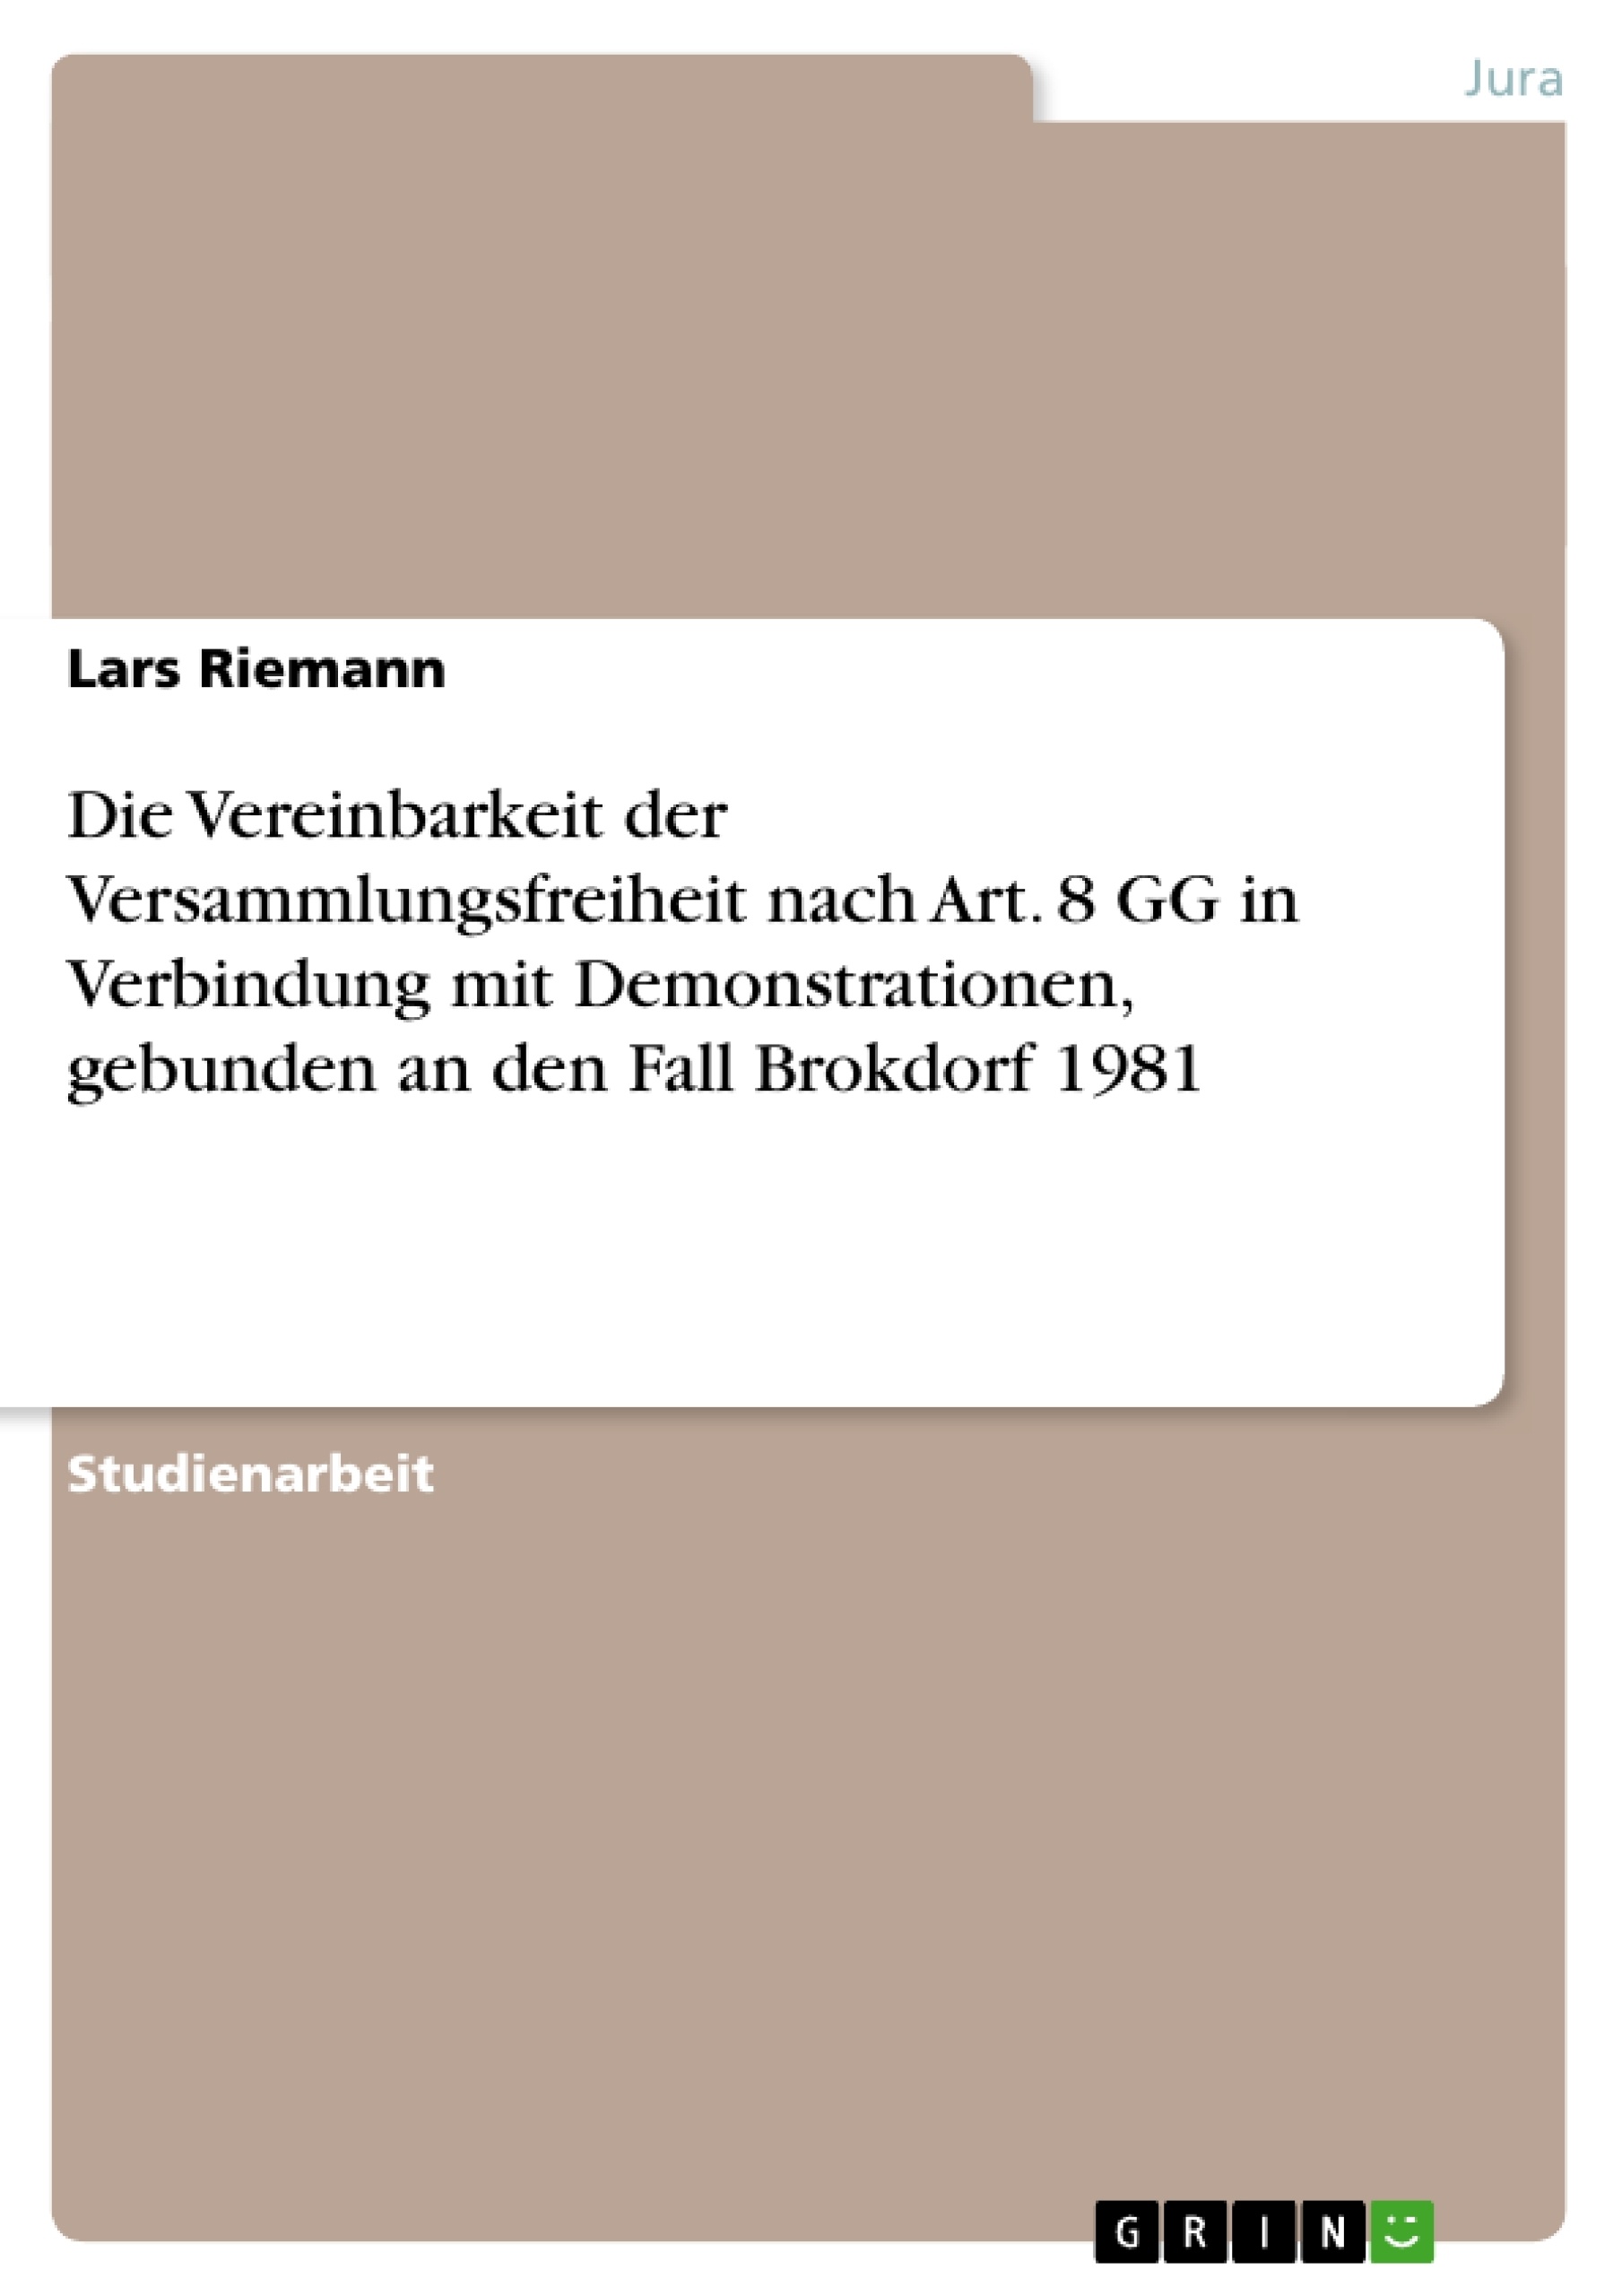 Title: Die Vereinbarkeit der Versammlungsfreiheit nach Art. 8 GG in Verbindung mit Demonstrationen, gebunden an den Fall Brokdorf 1981